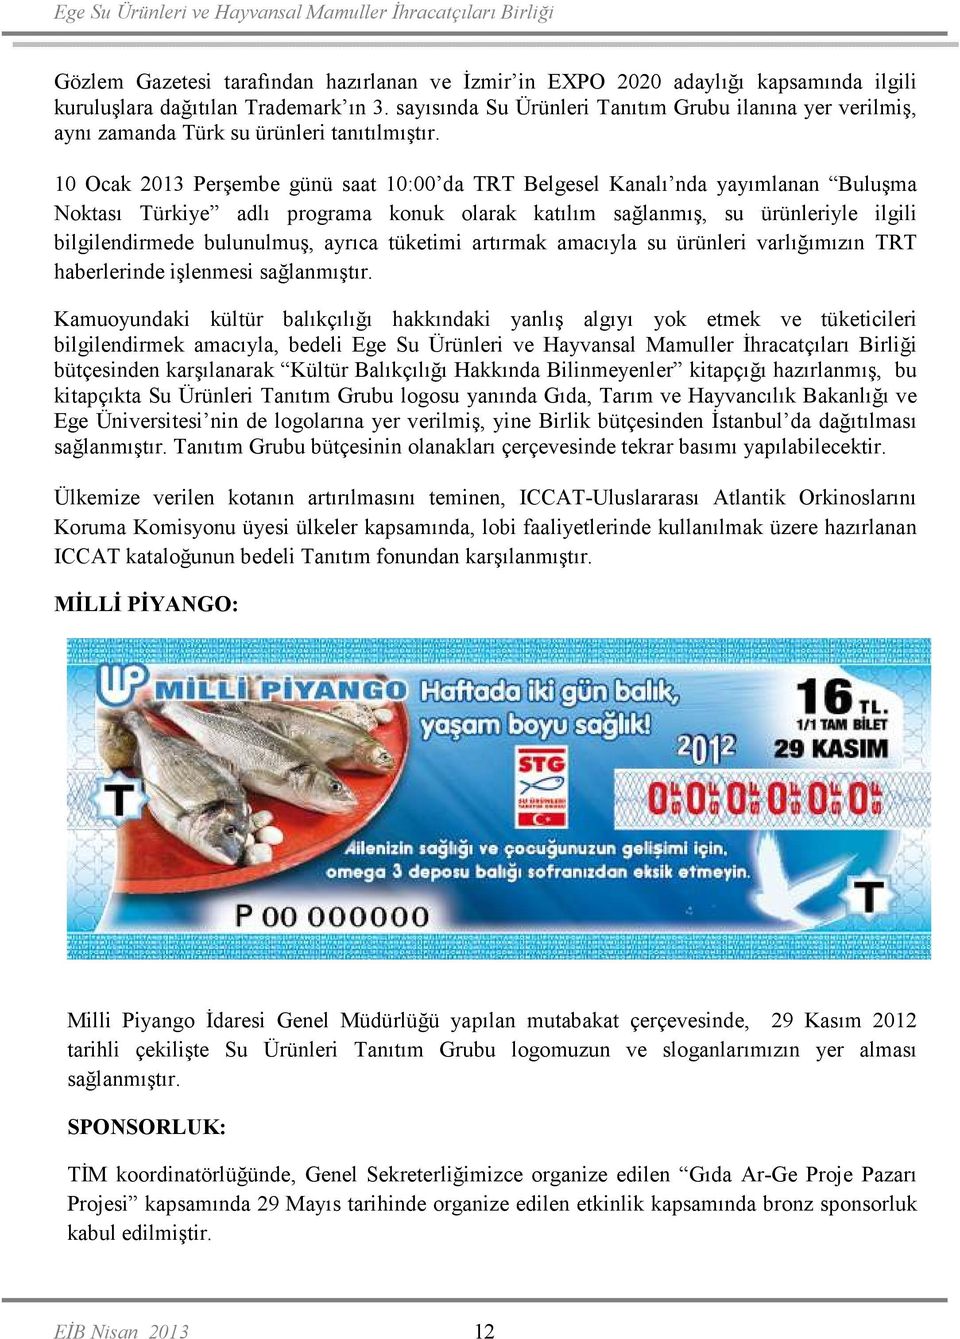 10 Ocak 2013 Perşembe günü saat 10:00 da TRT Belgesel Kanalı nda yayımlanan Buluşma Noktası Türkiye adlı programa konuk olarak katılım sağlanmış, su ürünleriyle ilgili bilgilendirmede bulunulmuş,